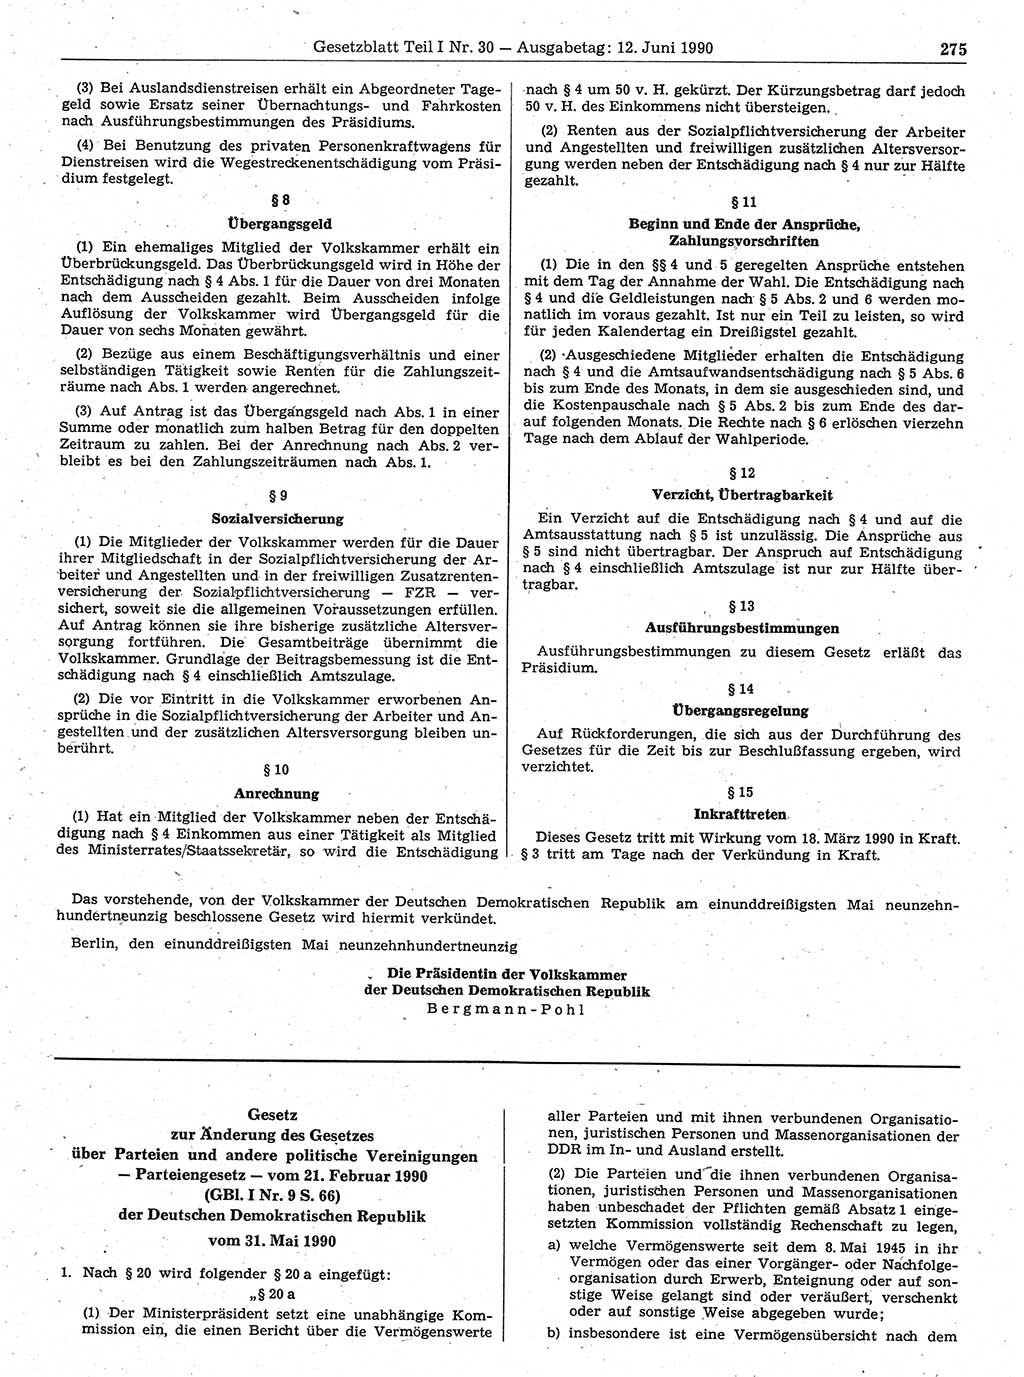 Gesetzblatt (GBl.) der Deutschen Demokratischen Republik (DDR) Teil Ⅰ 1990, Seite 275 (GBl. DDR Ⅰ 1990, S. 275)